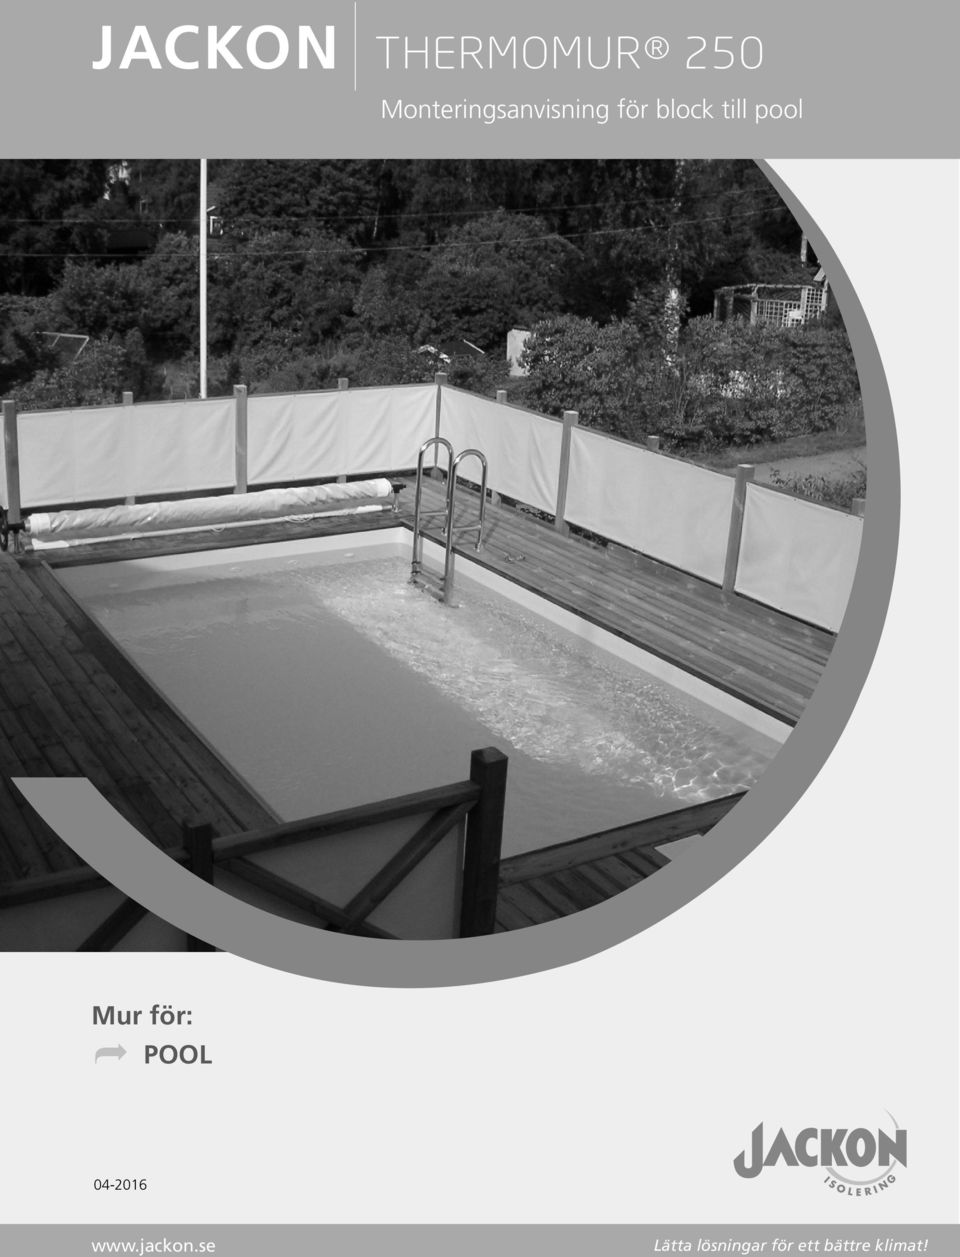 pool Mur för: Ì POOL 04-2016 www.